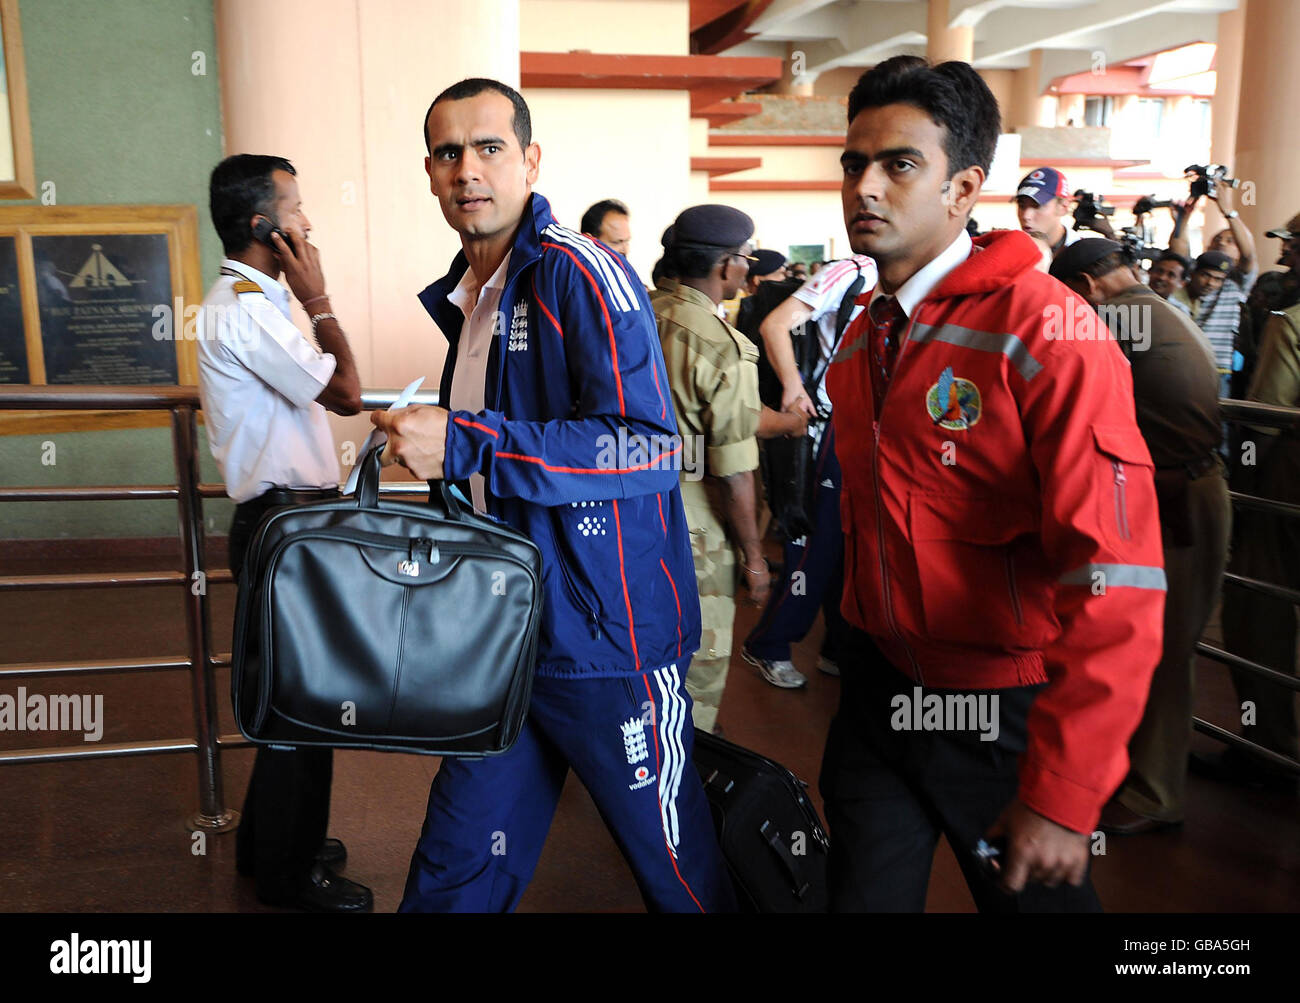 Cricket - Angleterre arrivée à l'aéroport de Bhubaneswar pour retour au Royaume-Uni - Inde.L'équipe de cricket d'Angleterre, Owais Shah, arrive à l'aéroport de Bhubaneswar après que l'équipe de cricket d'Angleterre ait décidé de retourner au Royaume-Uni, en Inde. Banque D'Images